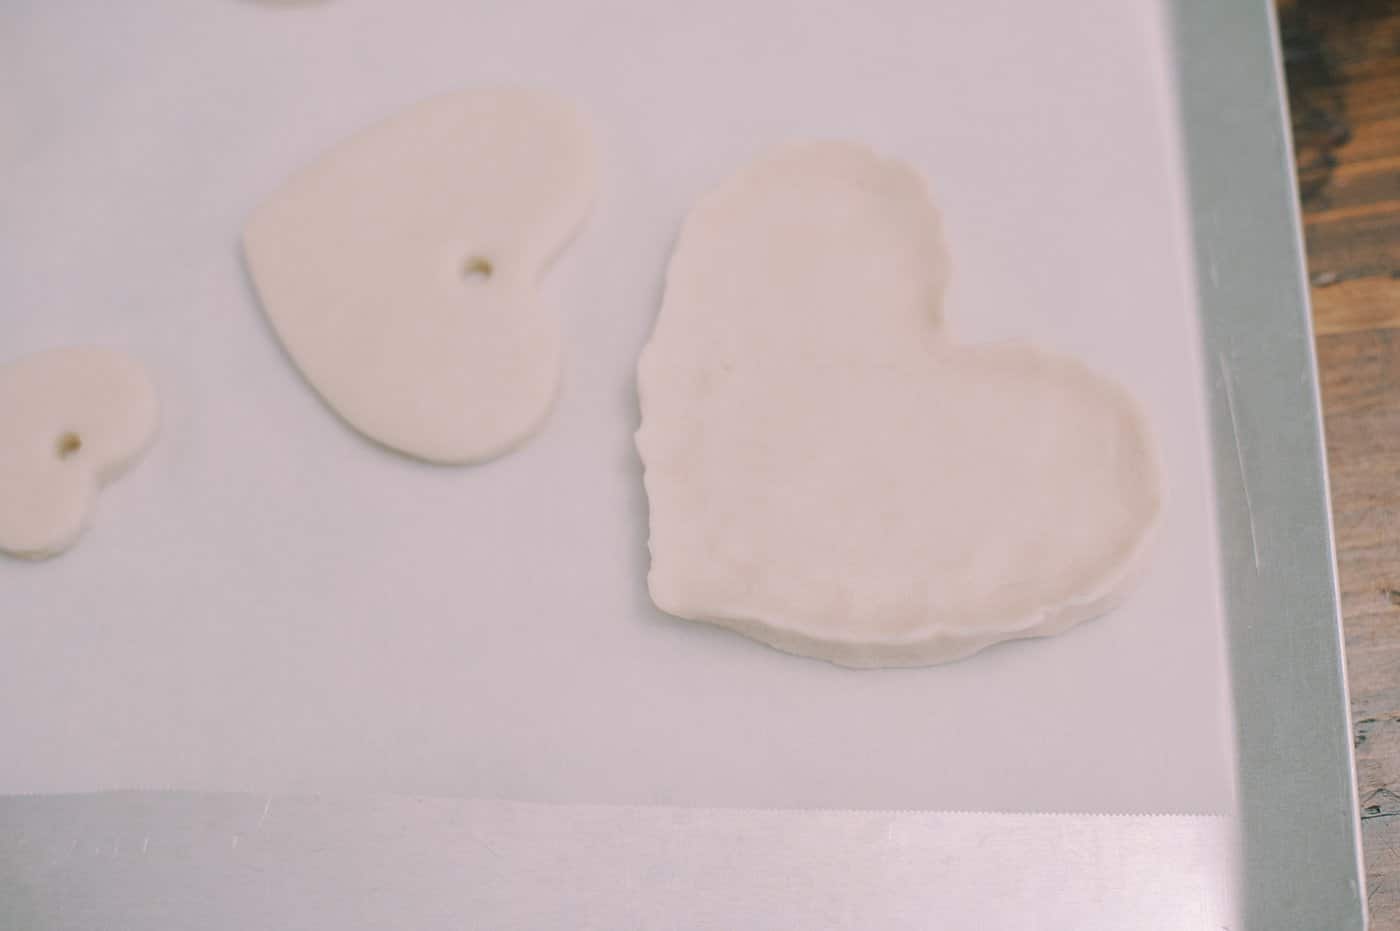 Supplies to make heart shaped salt dough hearts.